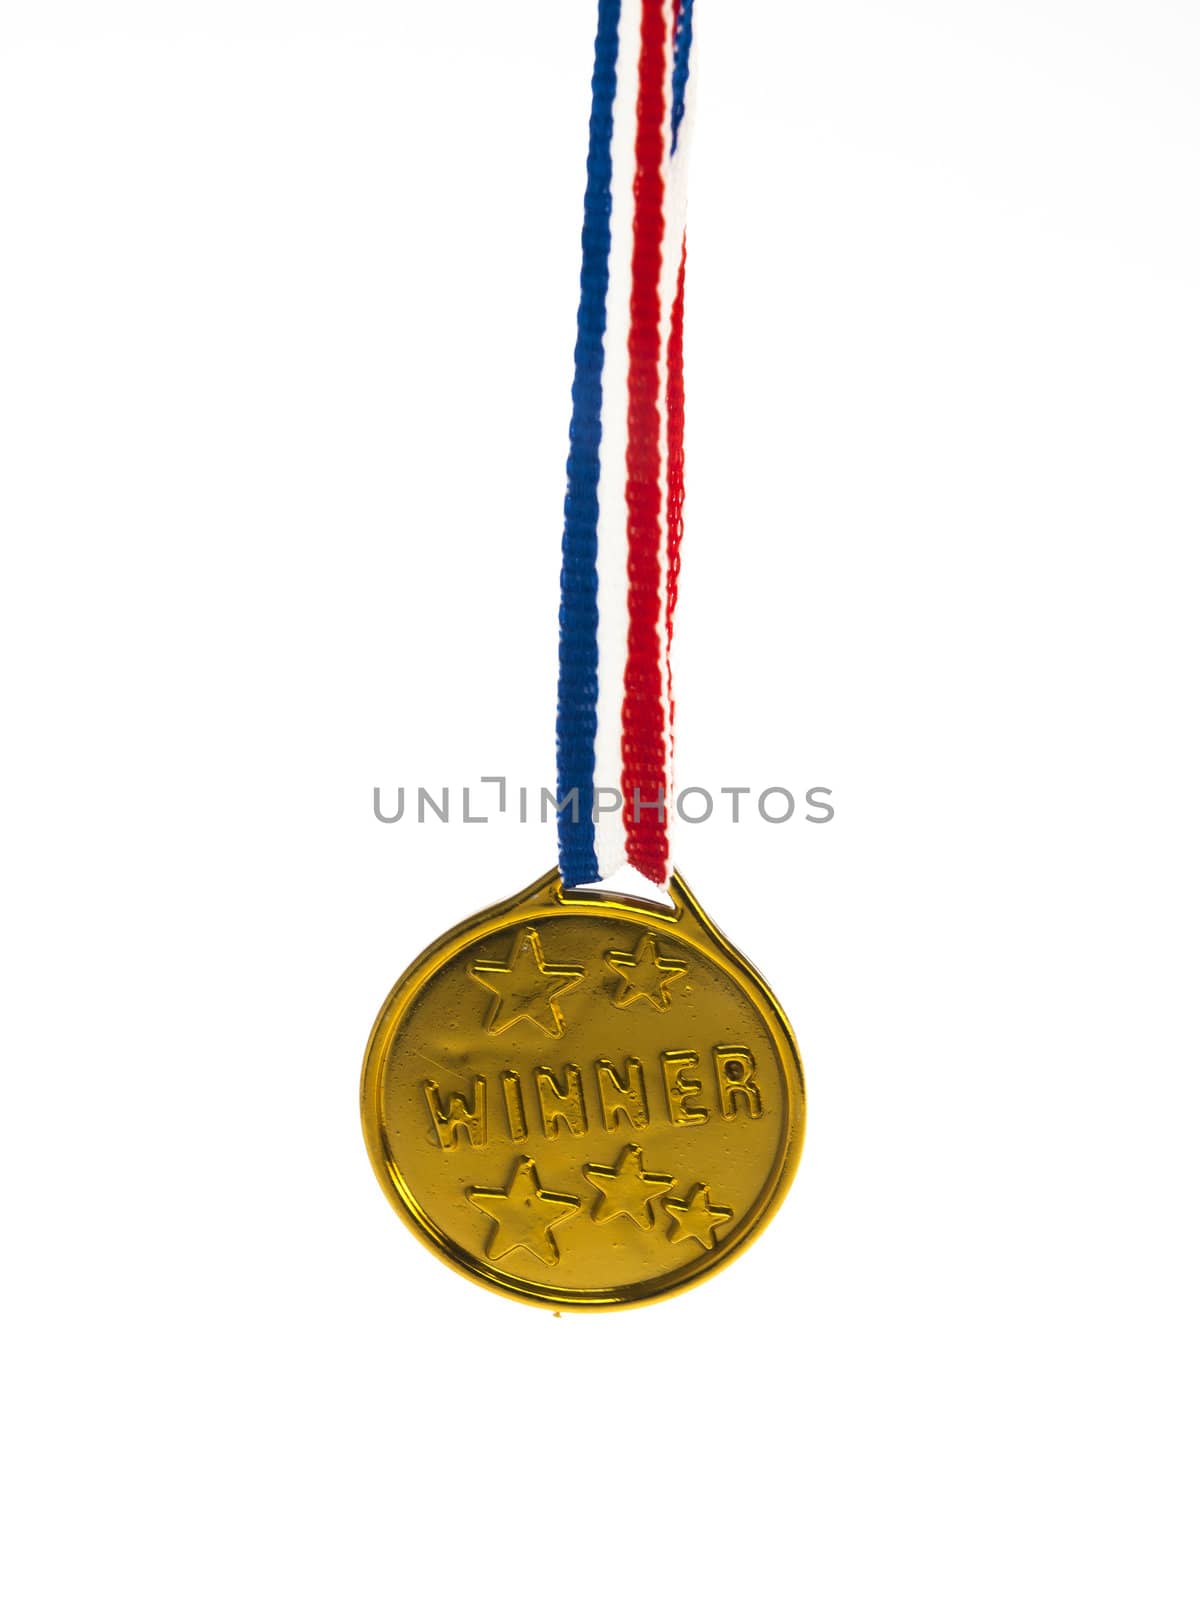 Gold medal winner pendant on a white background